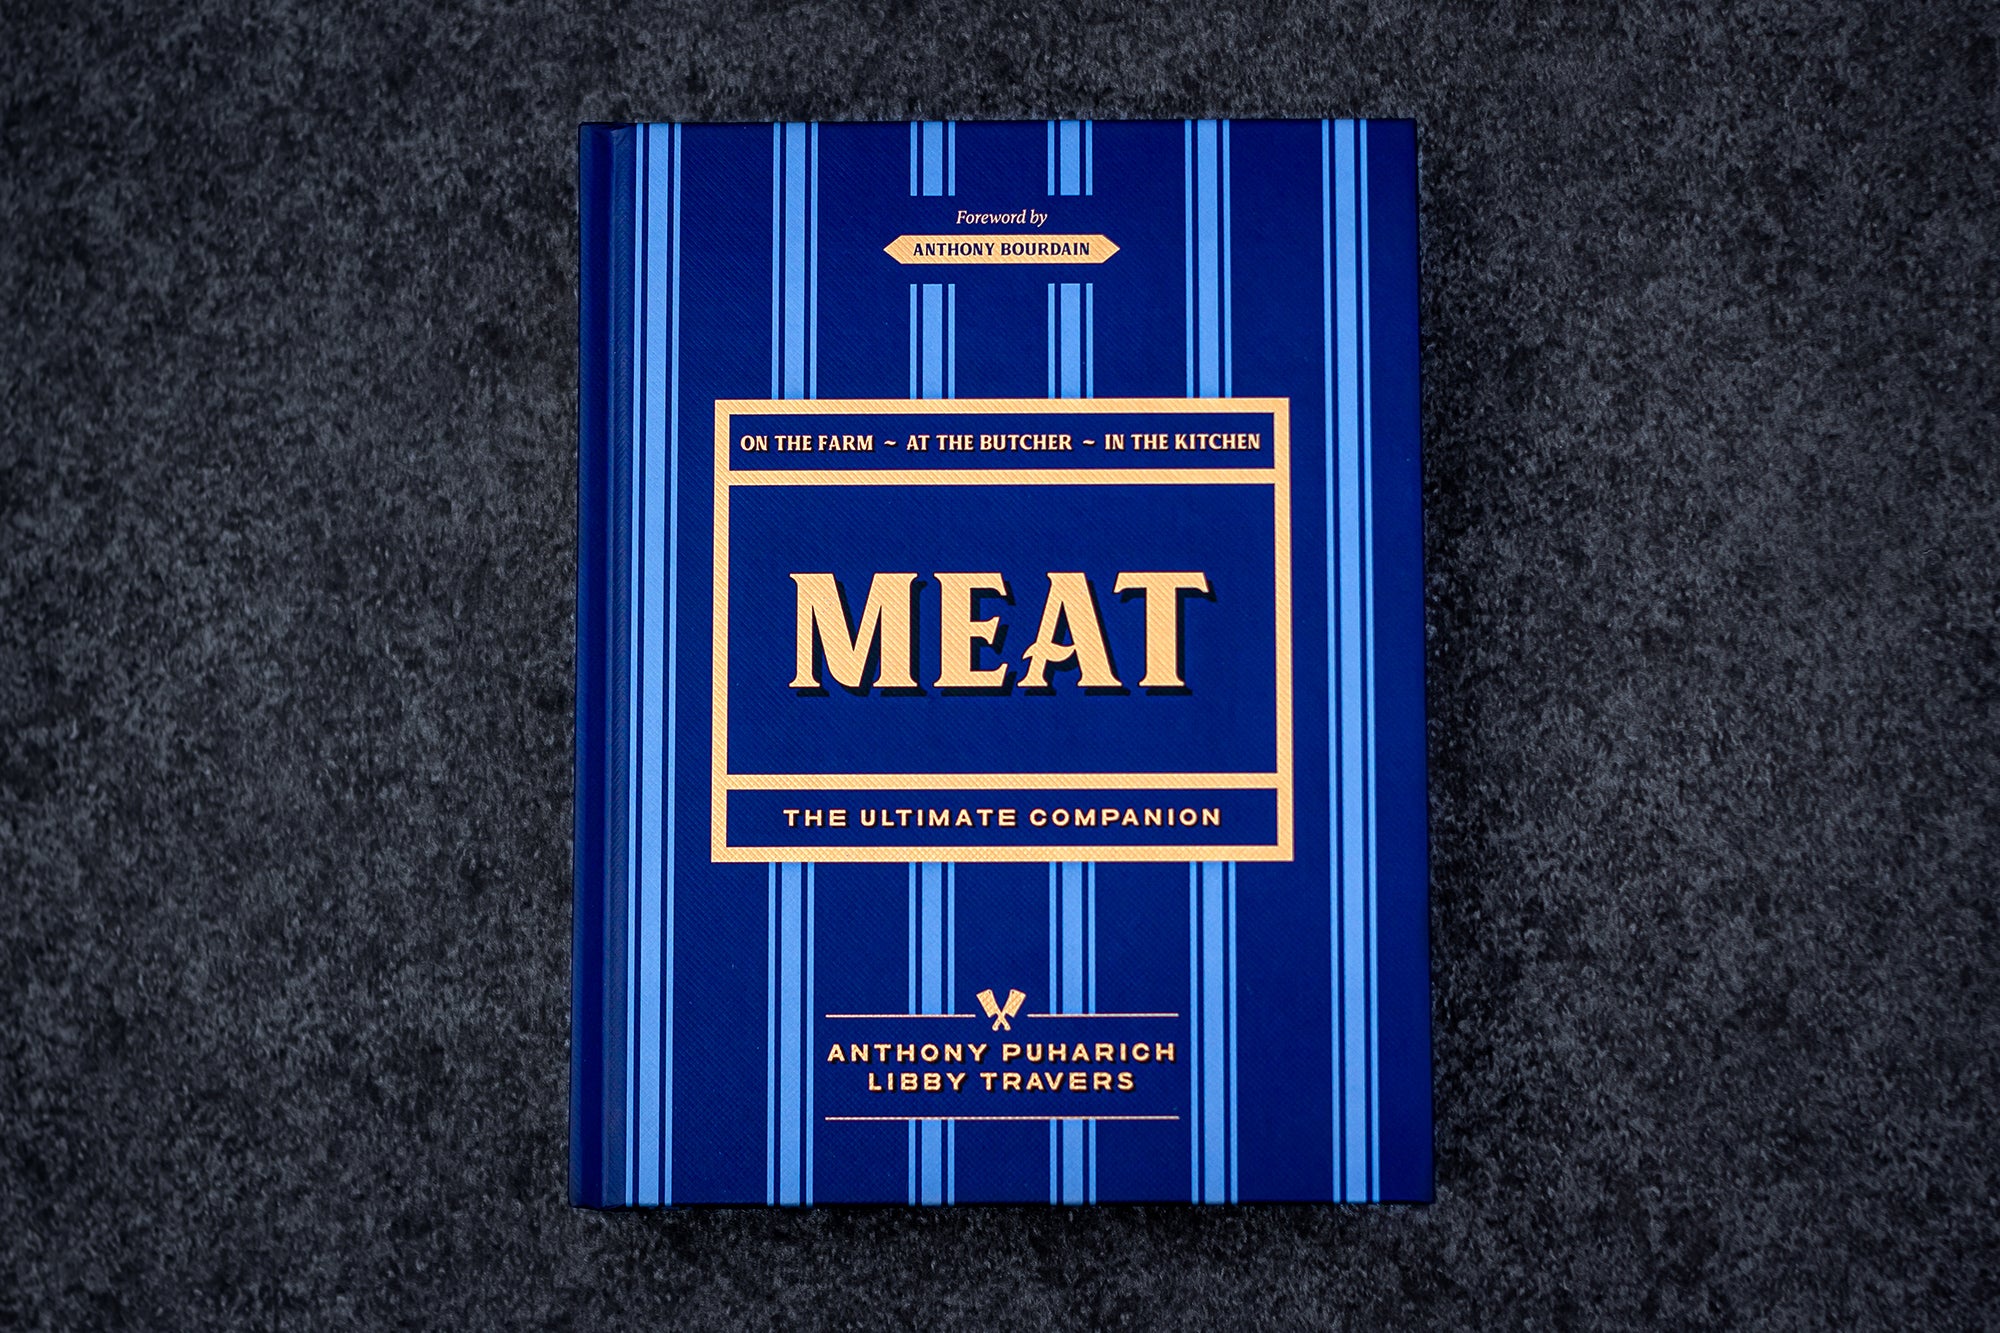 Tutto quello che devi sapere sulla carne è qui, nel libro di Antony Puharich 